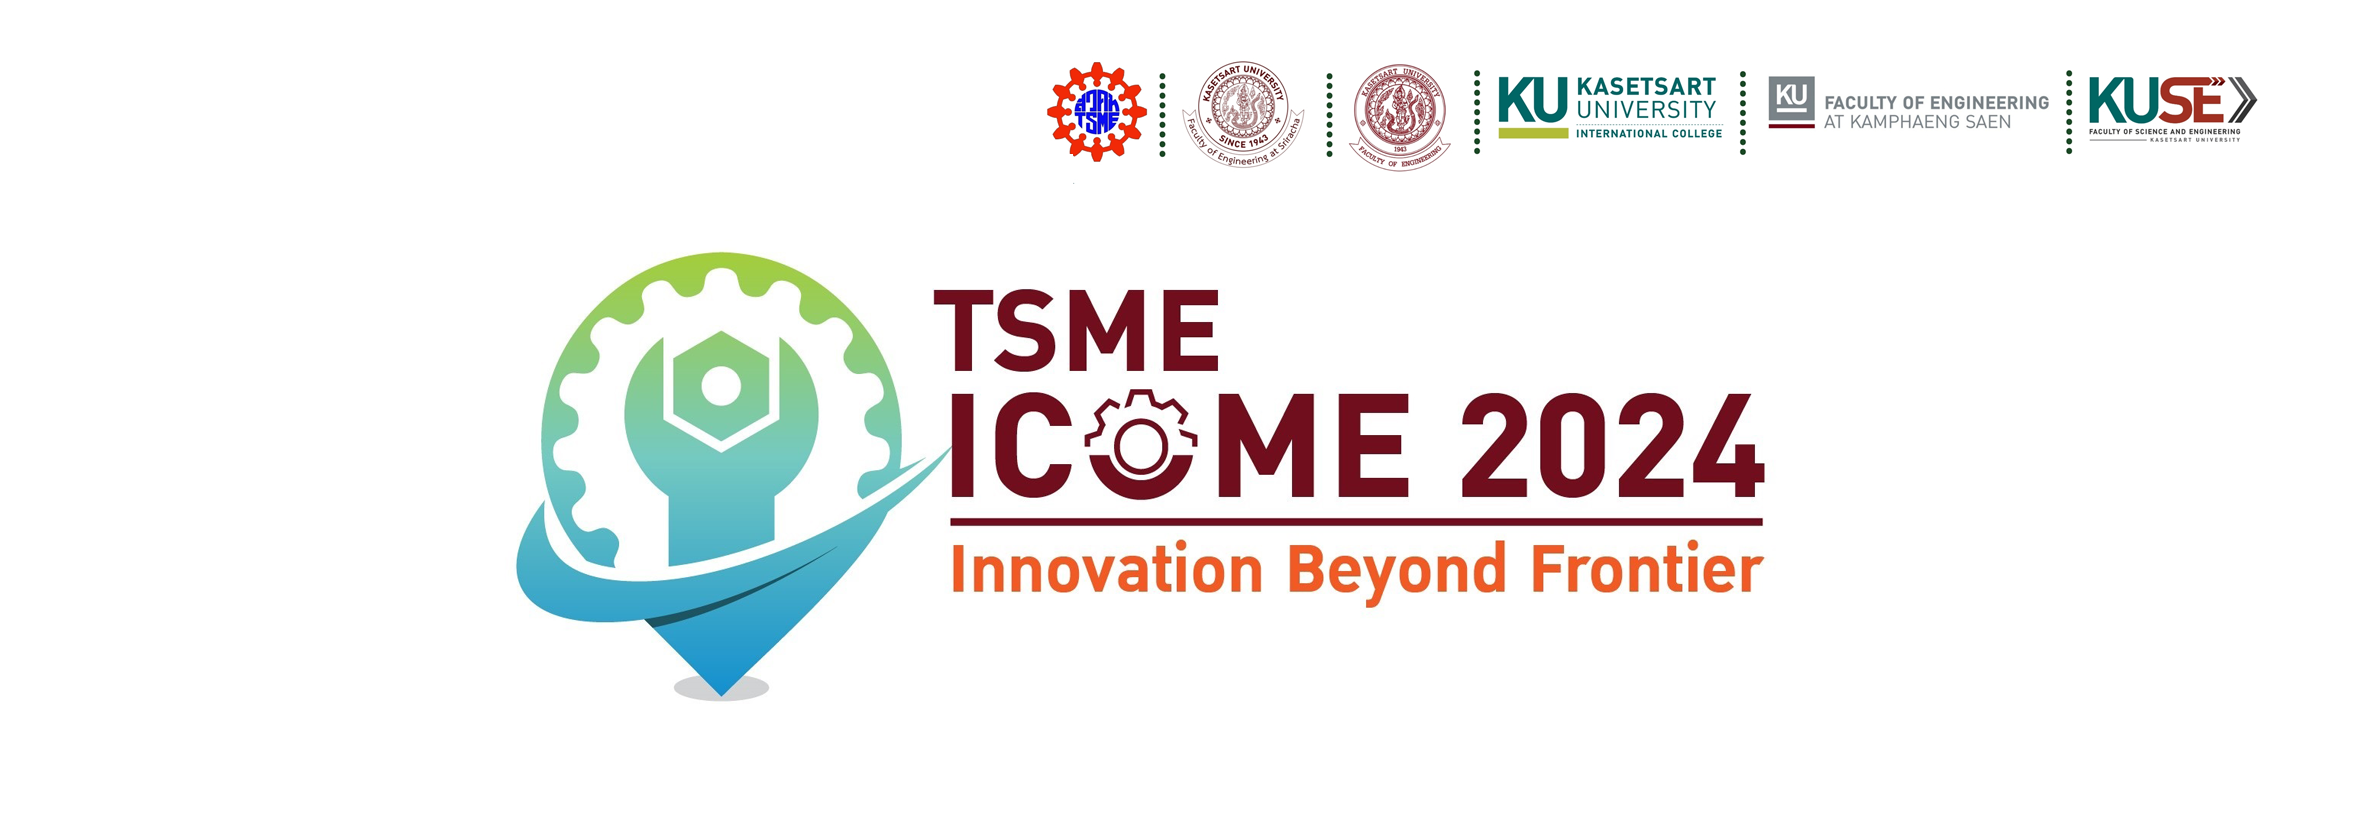 TSME-ICoME 2024